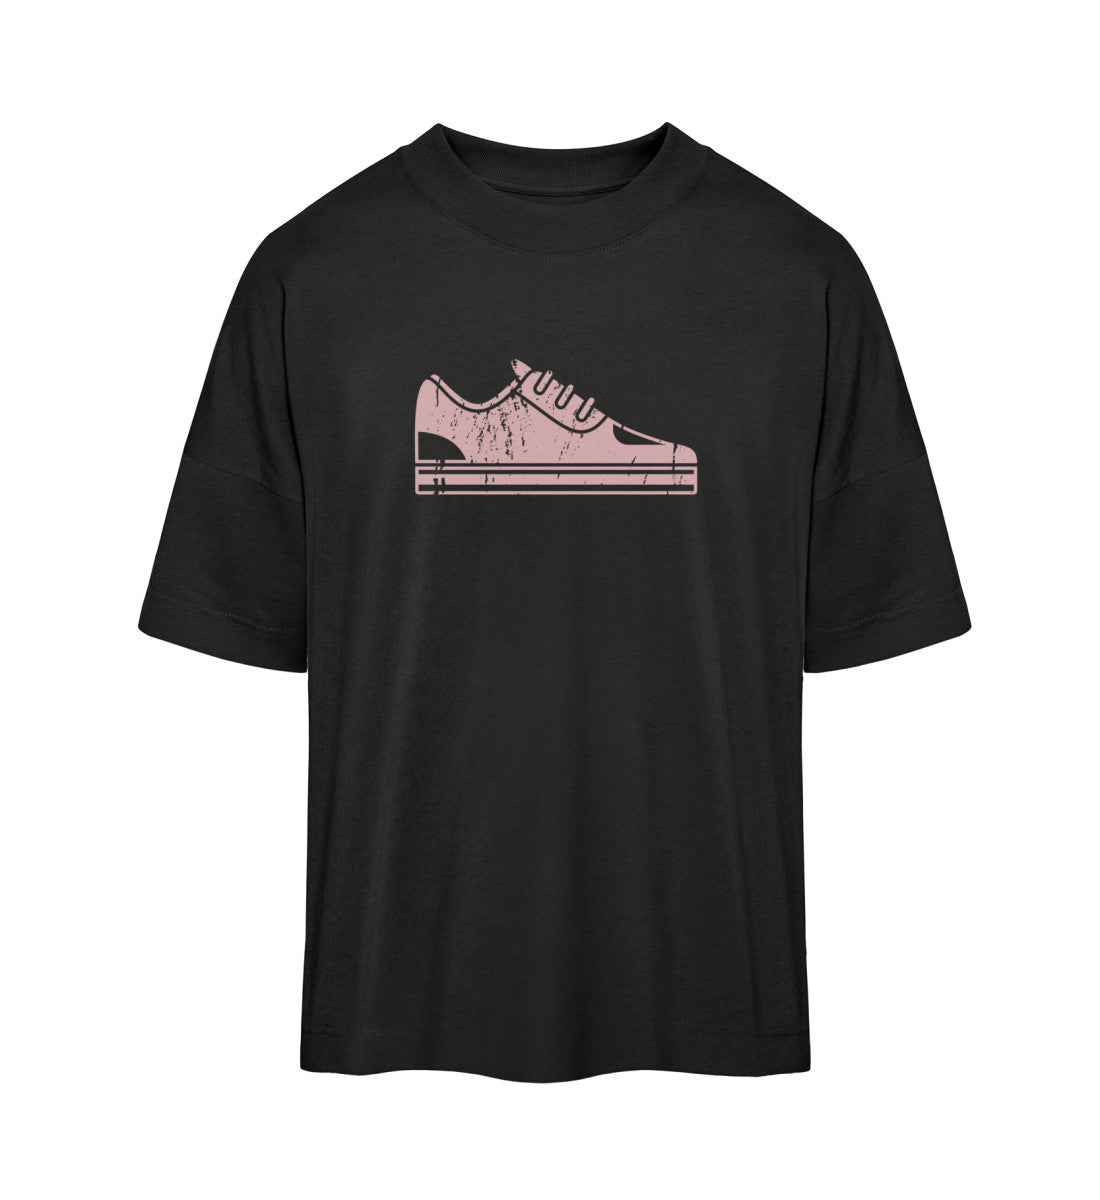 Schwarzes T-Shirt Unisex Oversize Fit für Frauen und Männer bedruckt mit dem Design der Roger Rockawoo Clothing Vintage Sneaker